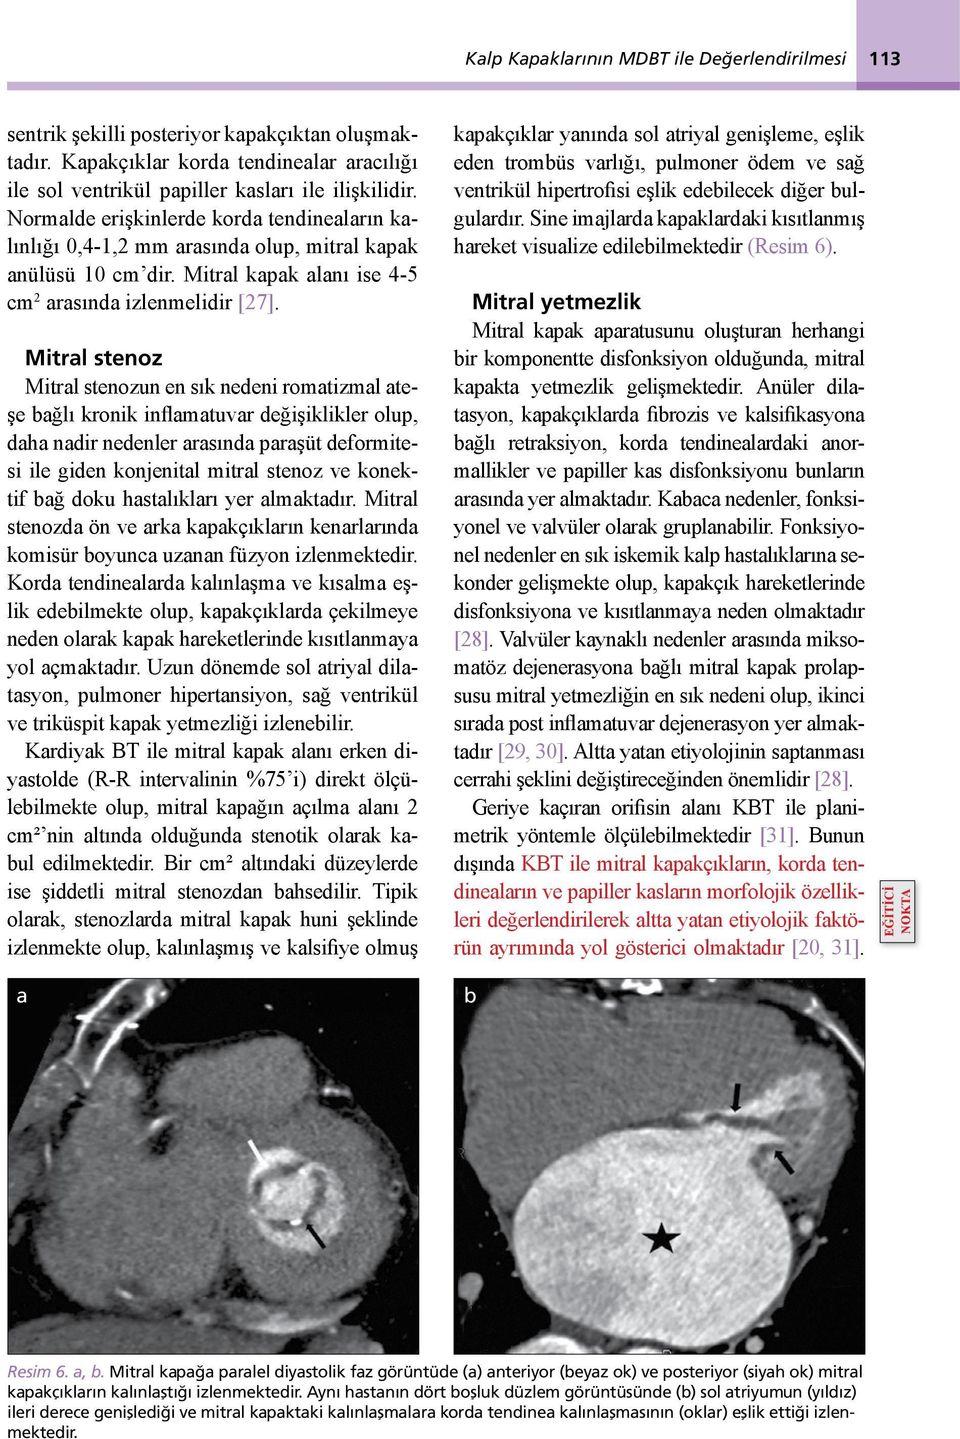 Mitrl stenoz Mitrl stenozun en sık nedeni romtizml teşe ğlı kronik inflmtuvr değişiklikler olup, dh ndir nedenler rsınd prşüt deformitesi ile giden konjenitl mitrl stenoz ve konektif ğ doku hstlıklrı